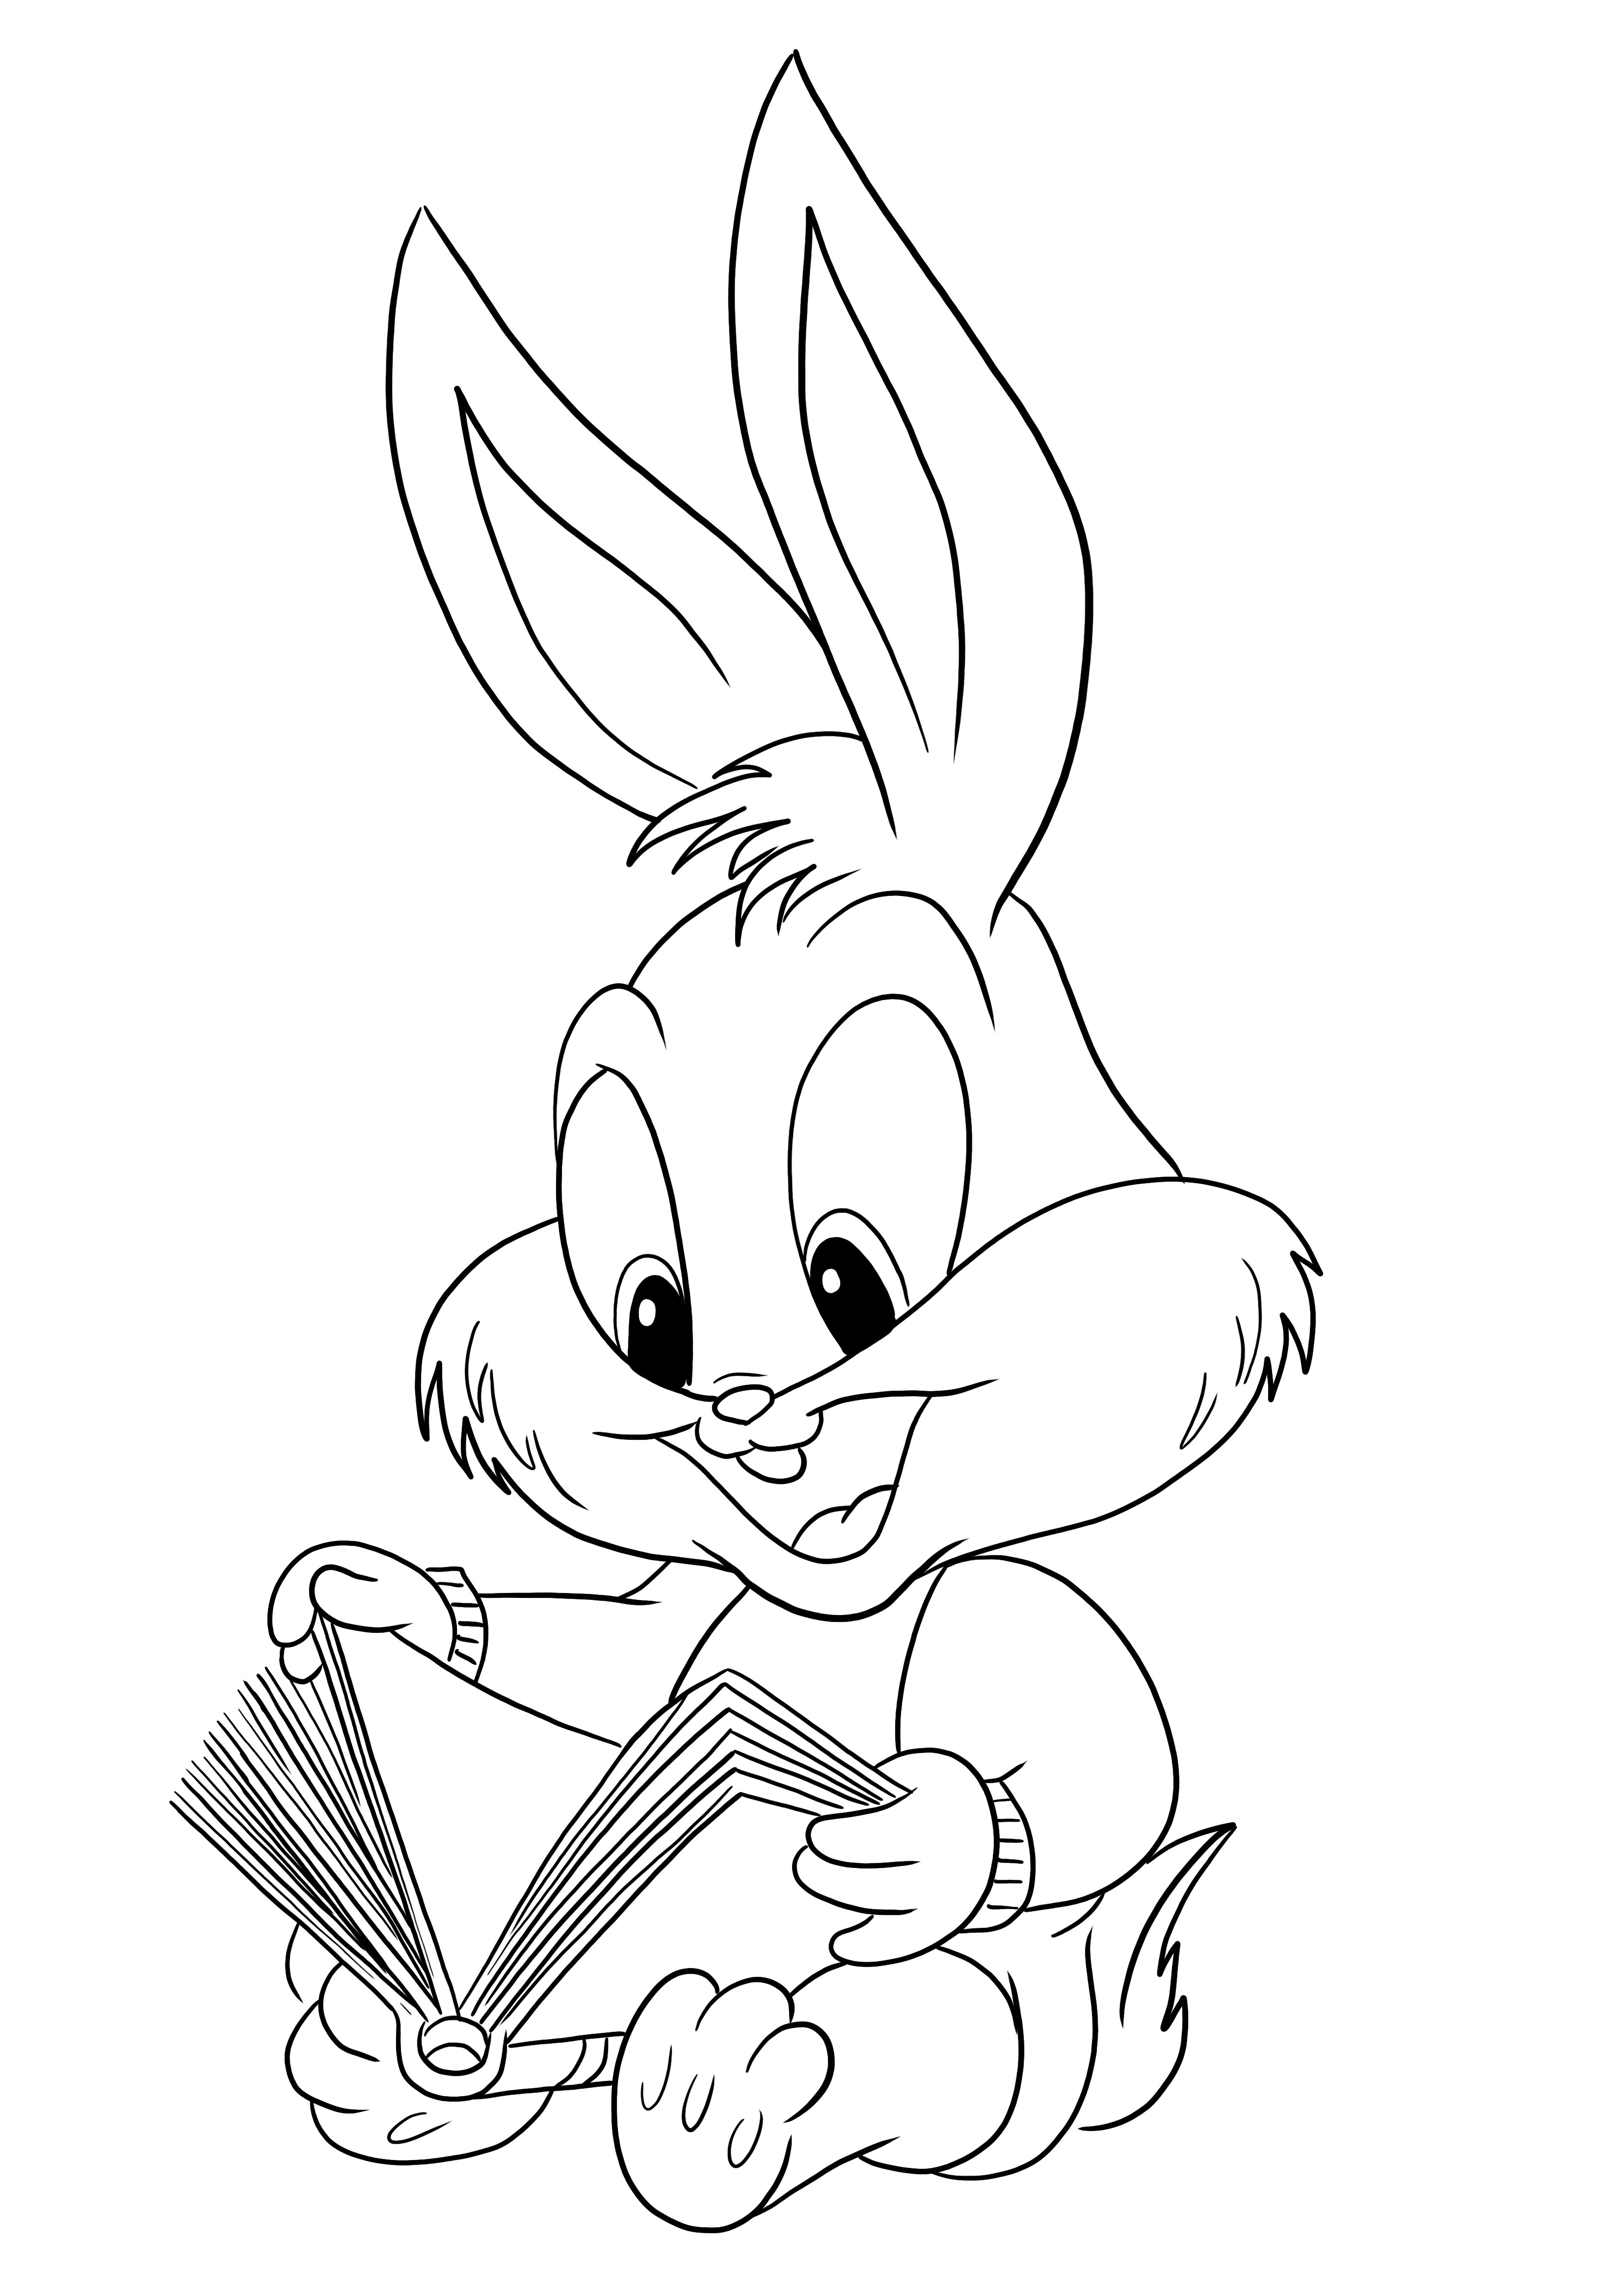 Sevimli Buster Bunny baskı için ücretsiz ve tüm çocuklar için boyama için eğlence